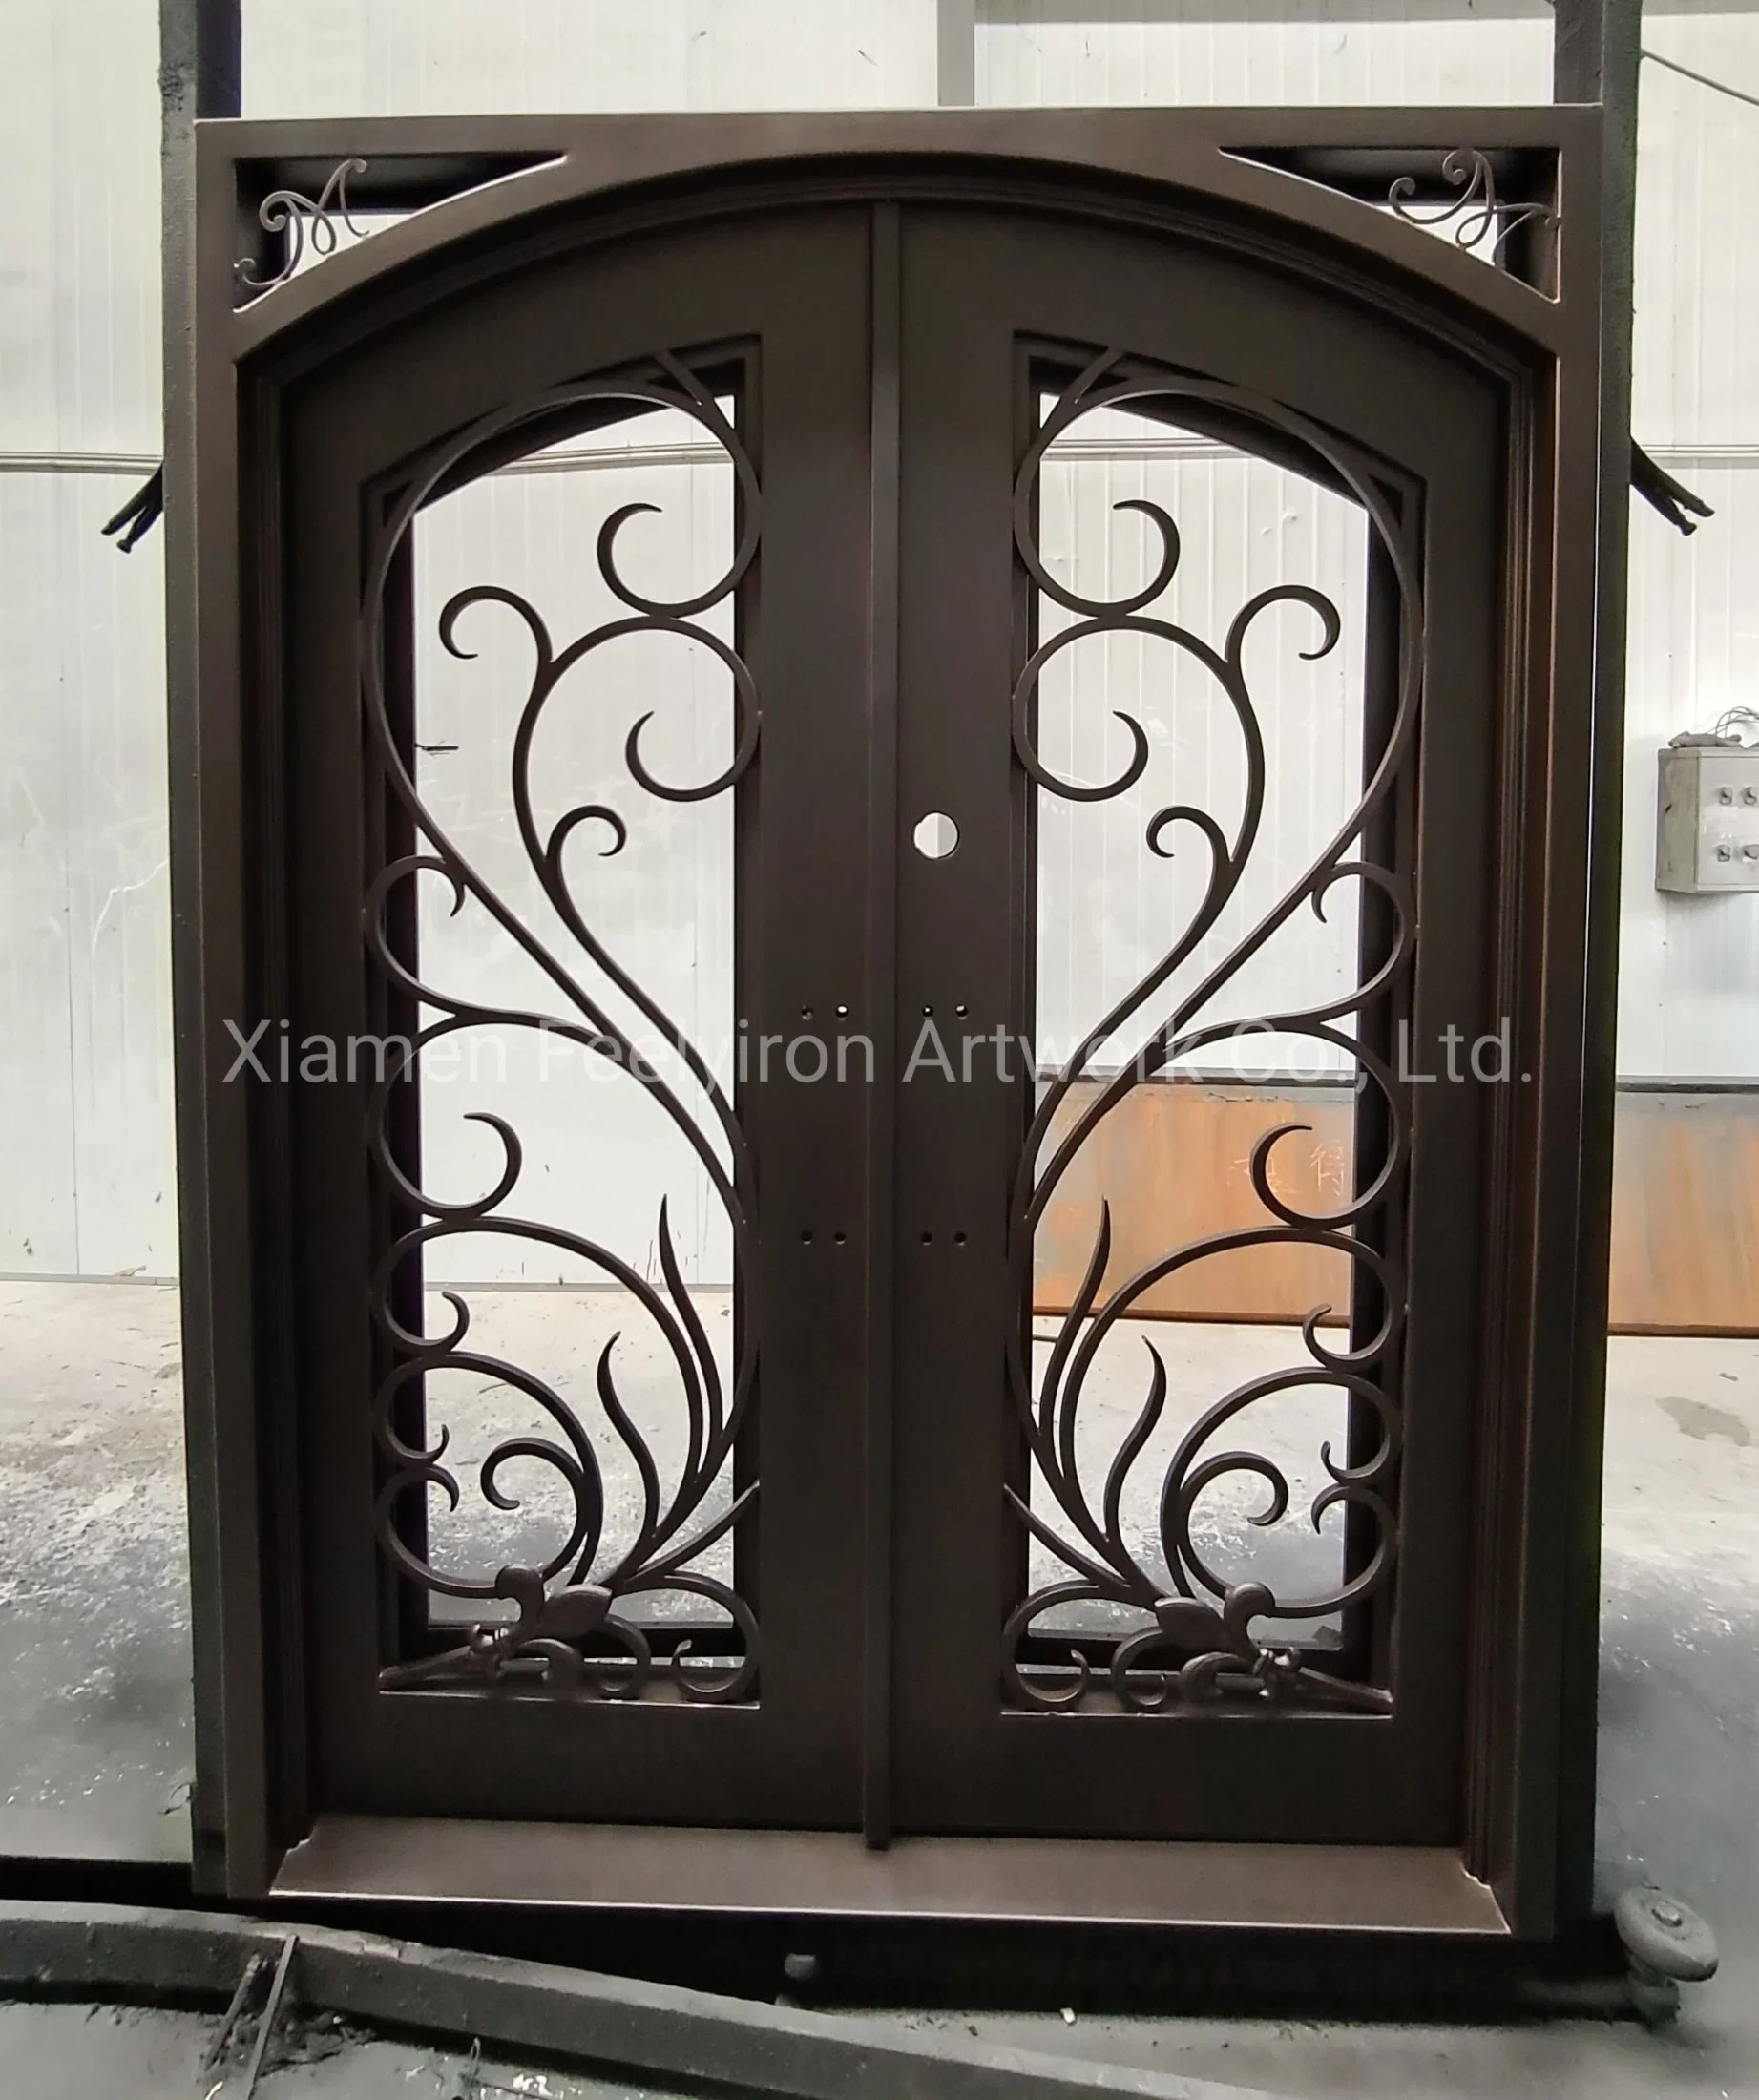 Superior de la plaza de estilo americana clásica de doble puerta decorativos de hierro forjado.